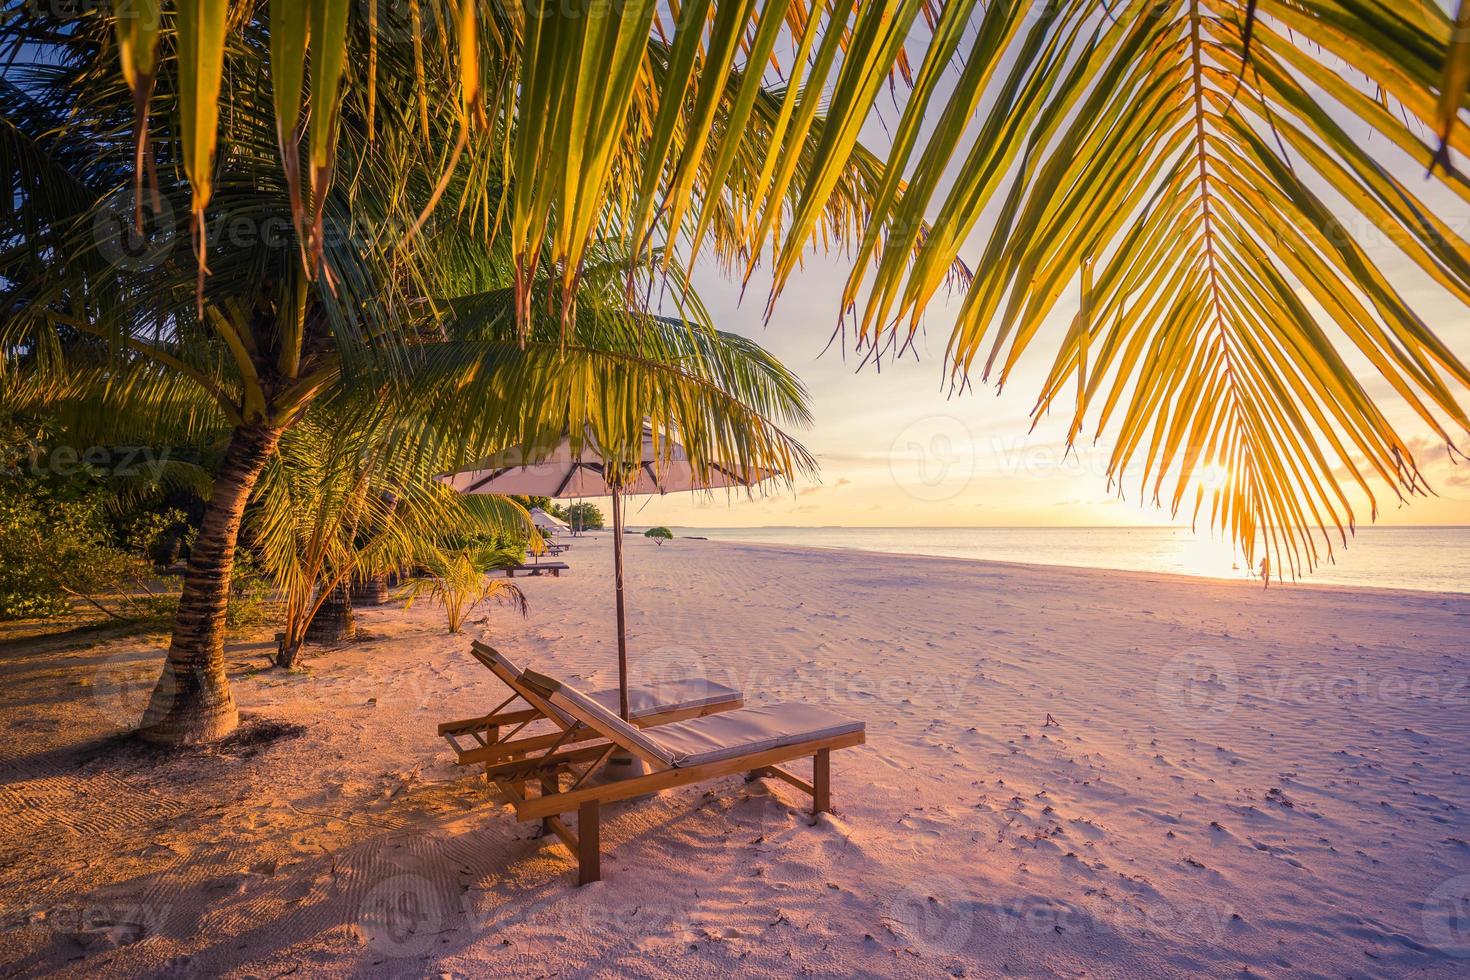 verbazingwekkend vakantie strand. paar stoelen samen door de zee spandoek. zomer romantisch vakantie huwelijksreis concept. tropisch eiland landschap. rustig kust panorama, kom tot rust zand kust horizon, palm bladeren foto